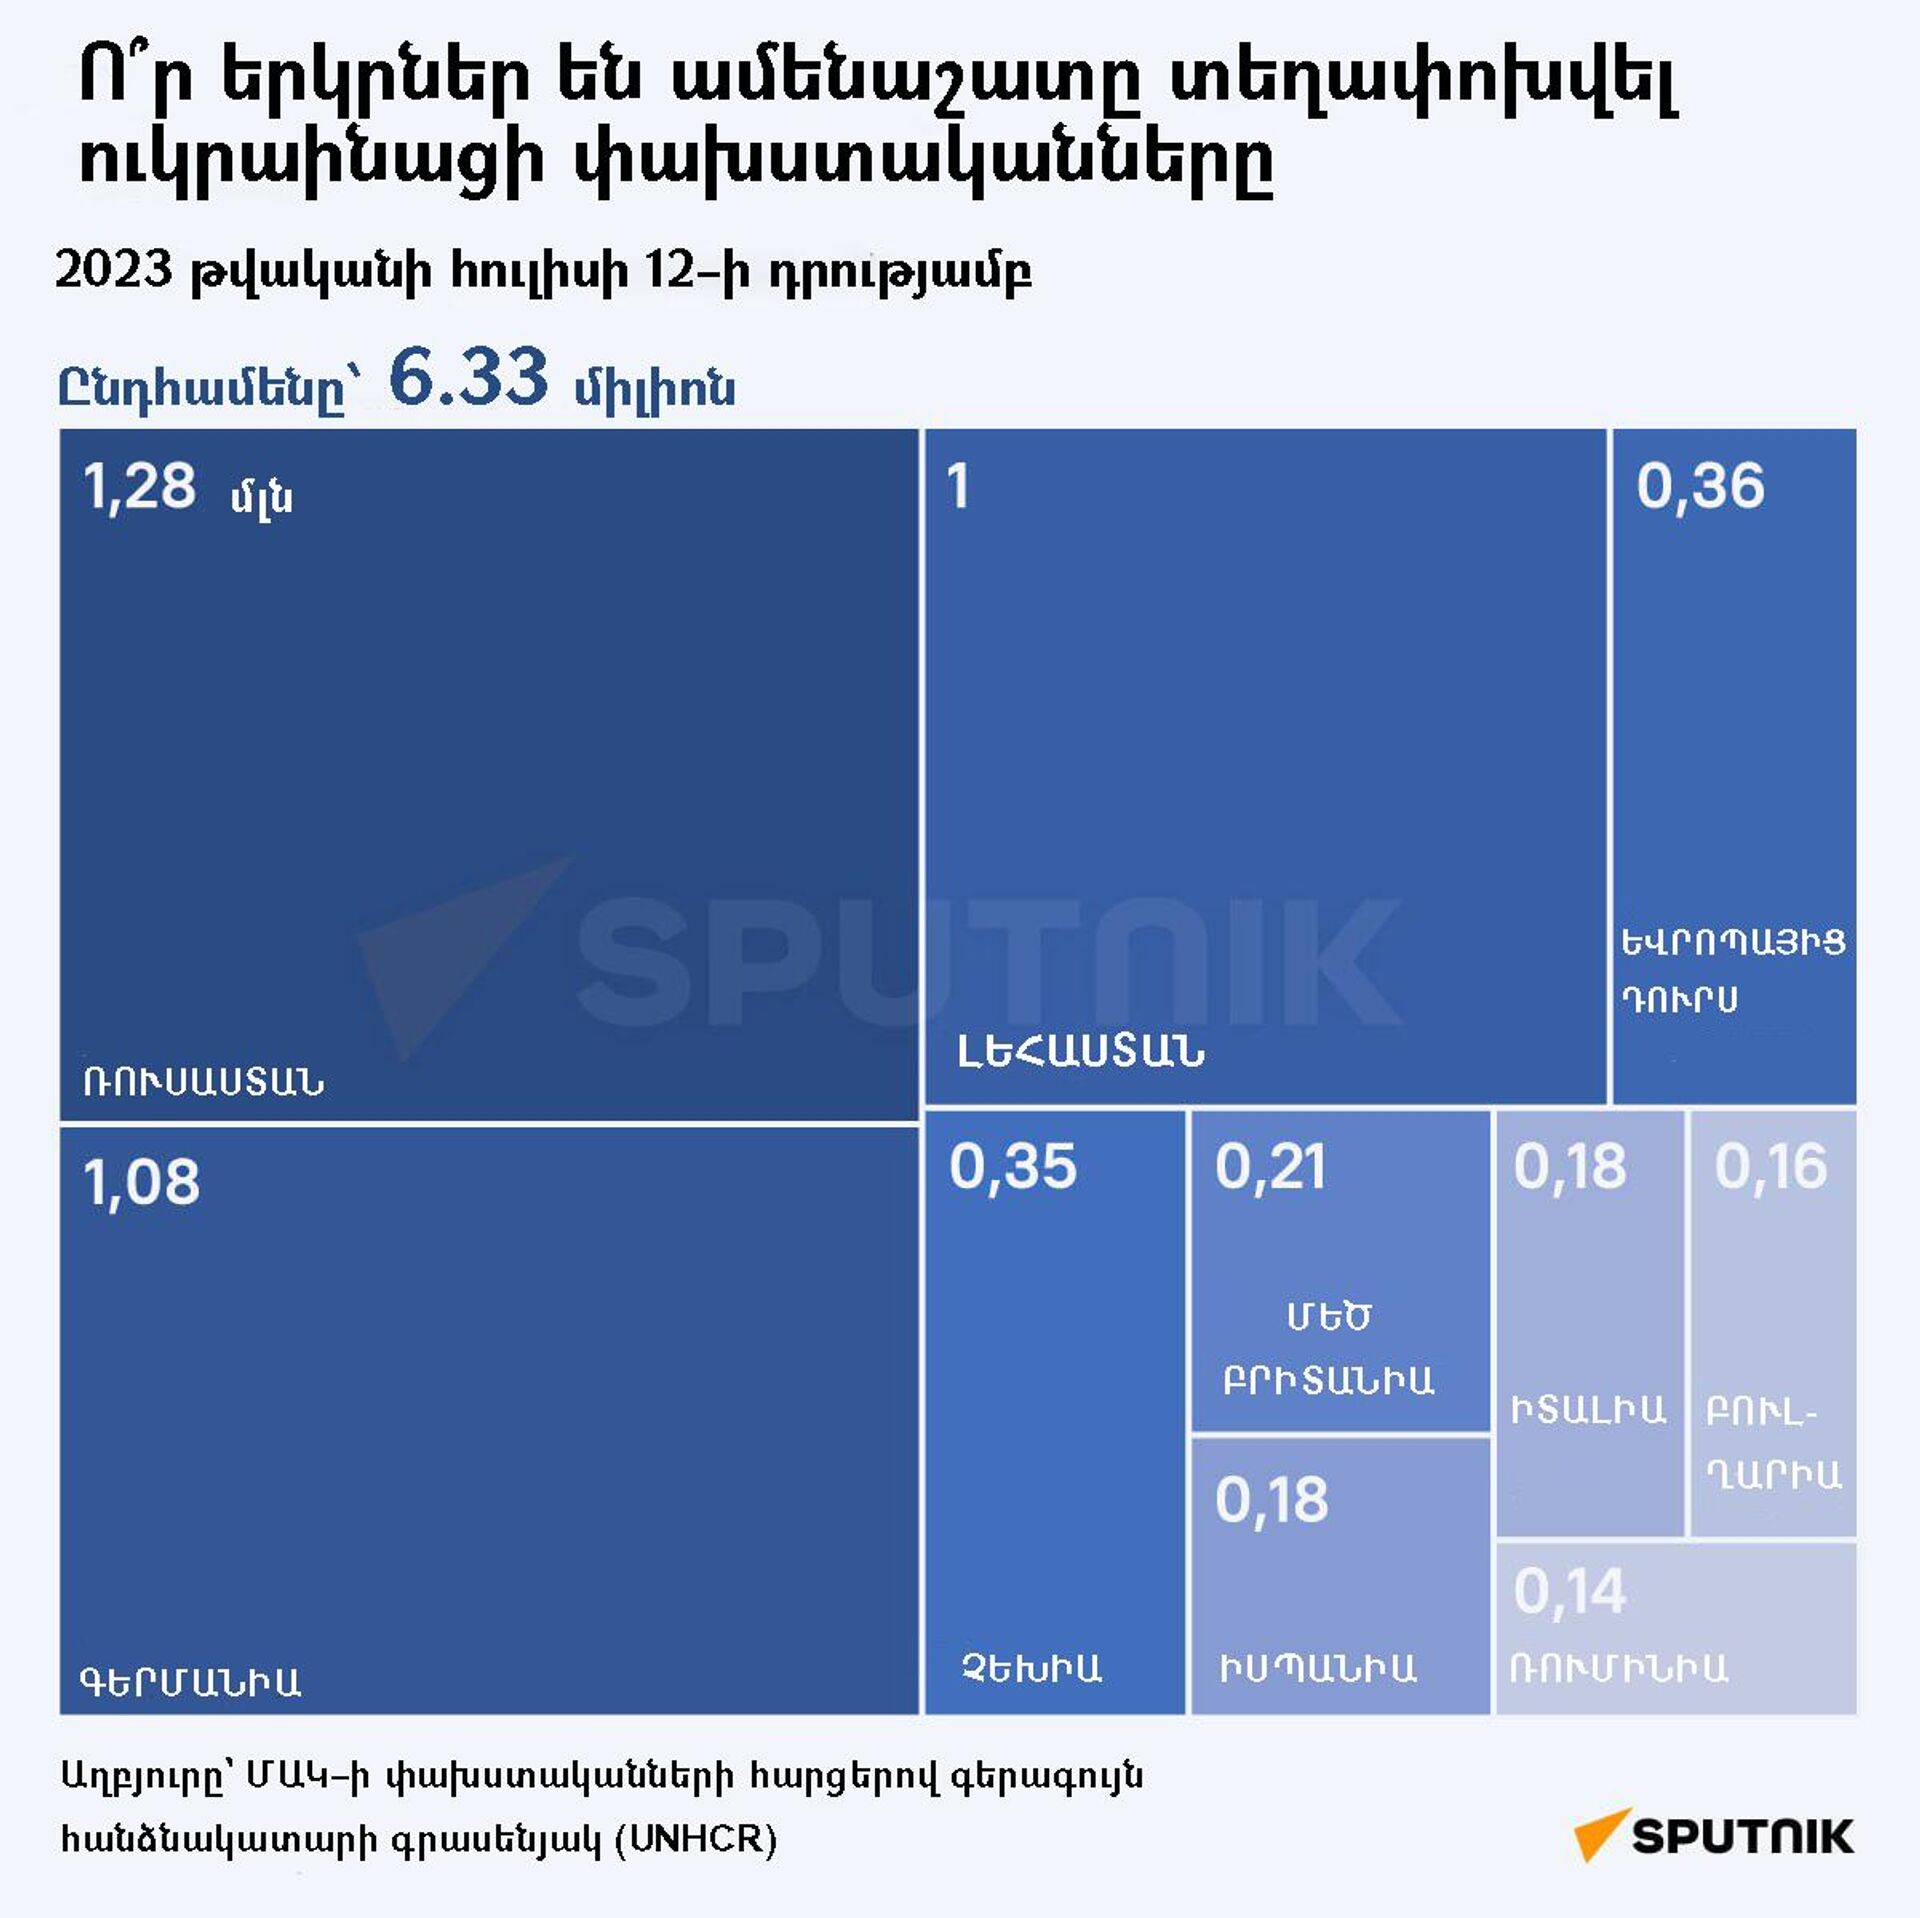 Ո՞ր երկրներ են ամենաշատը տեղափոխվել ուկրաինացի փախստականները - Sputnik Արմենիա, 1920, 14.07.2023